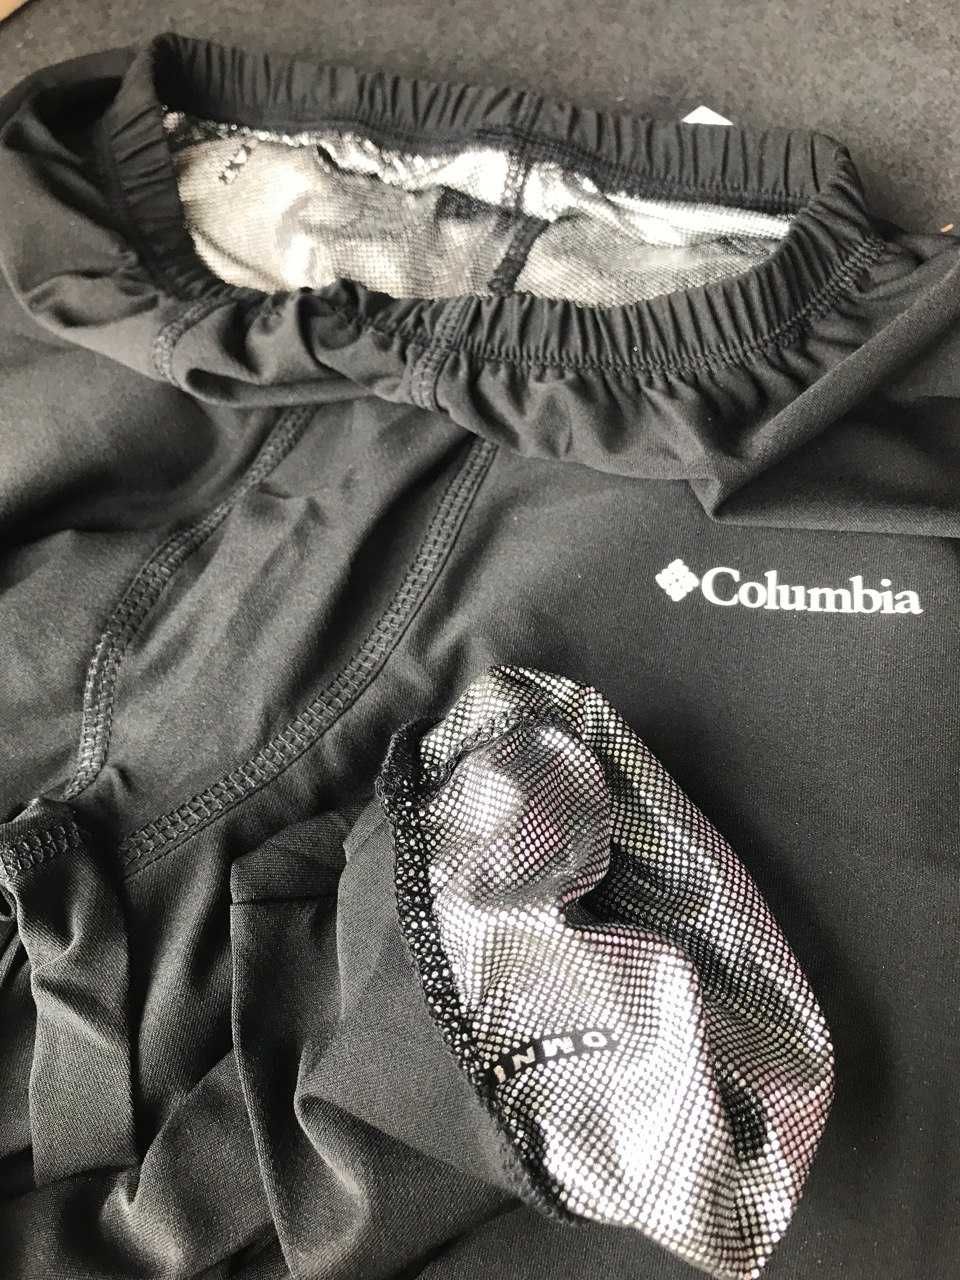 Зимова зігріваюча термобілизна Columbia Омні Хіт, Термобельё Коламбия